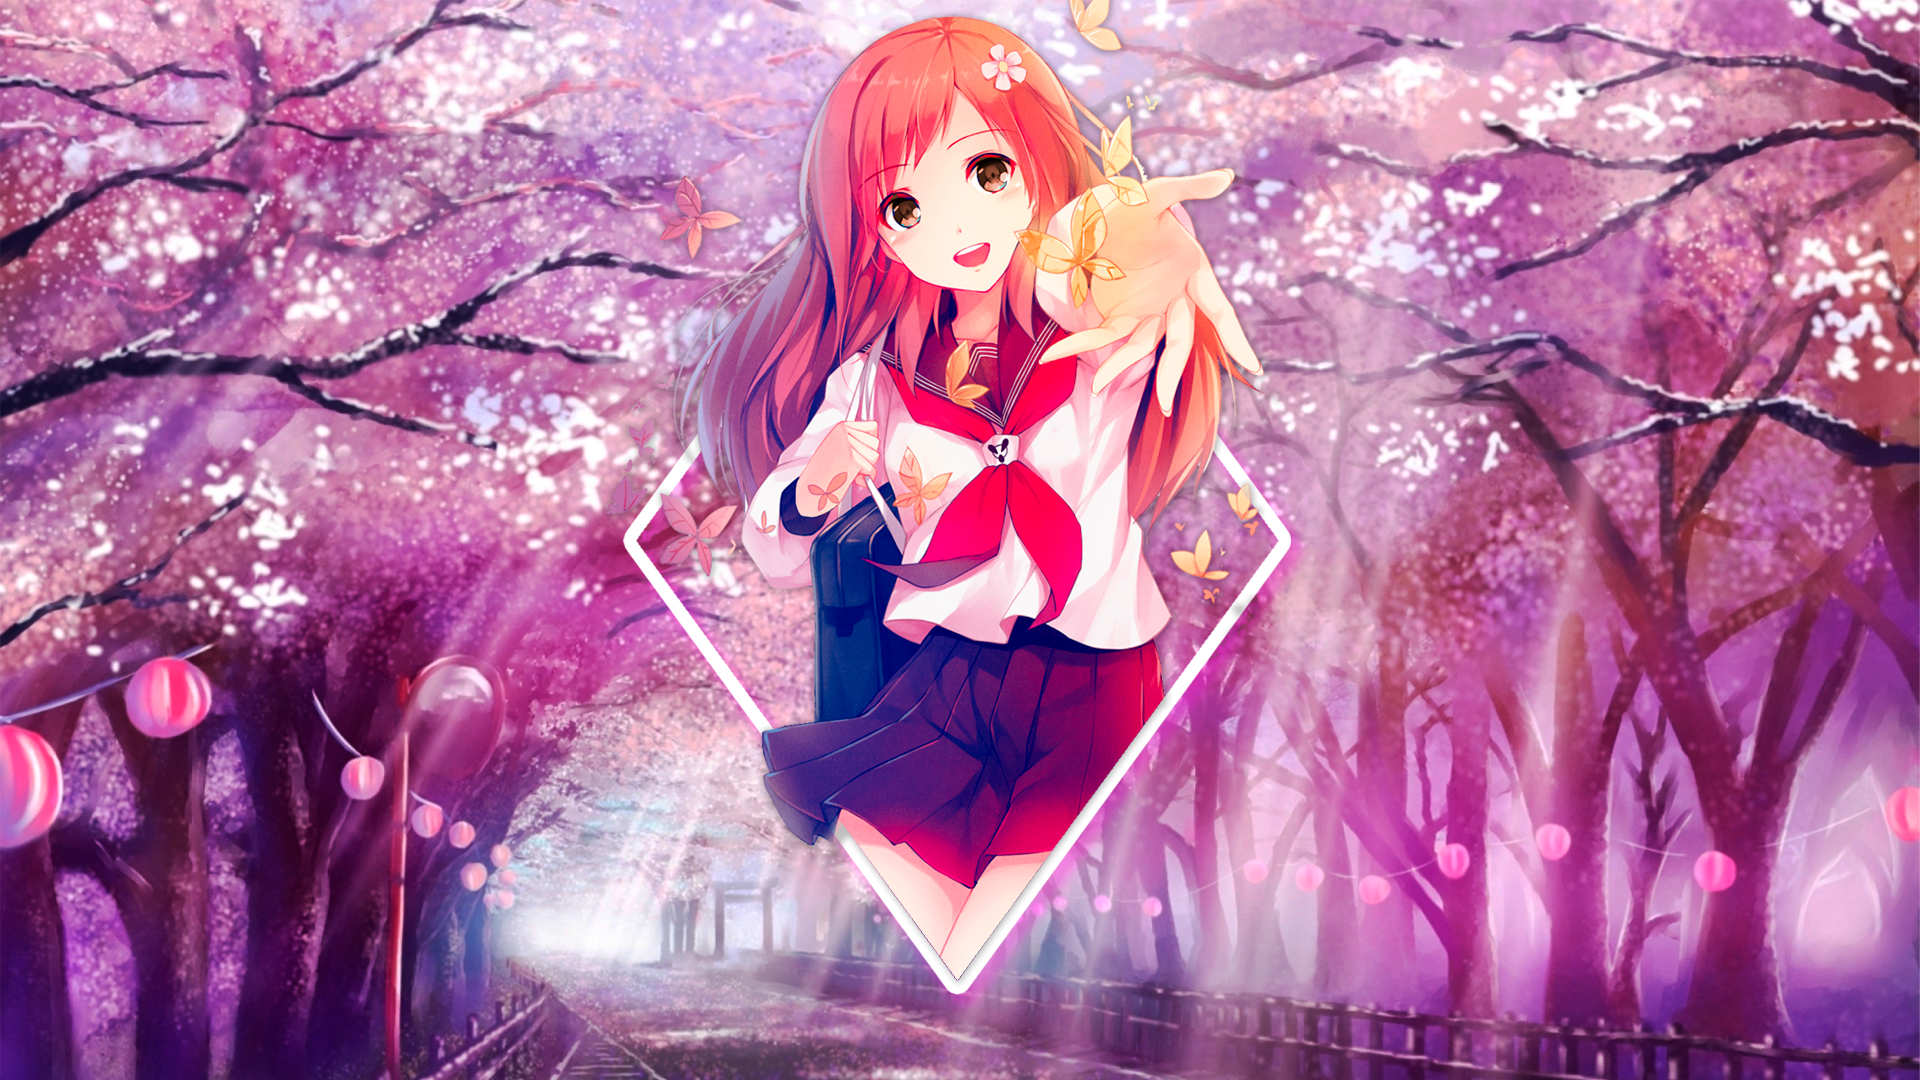 Wallpaper, anime girls, spring, Sakura blossom, romantic 1920x1080